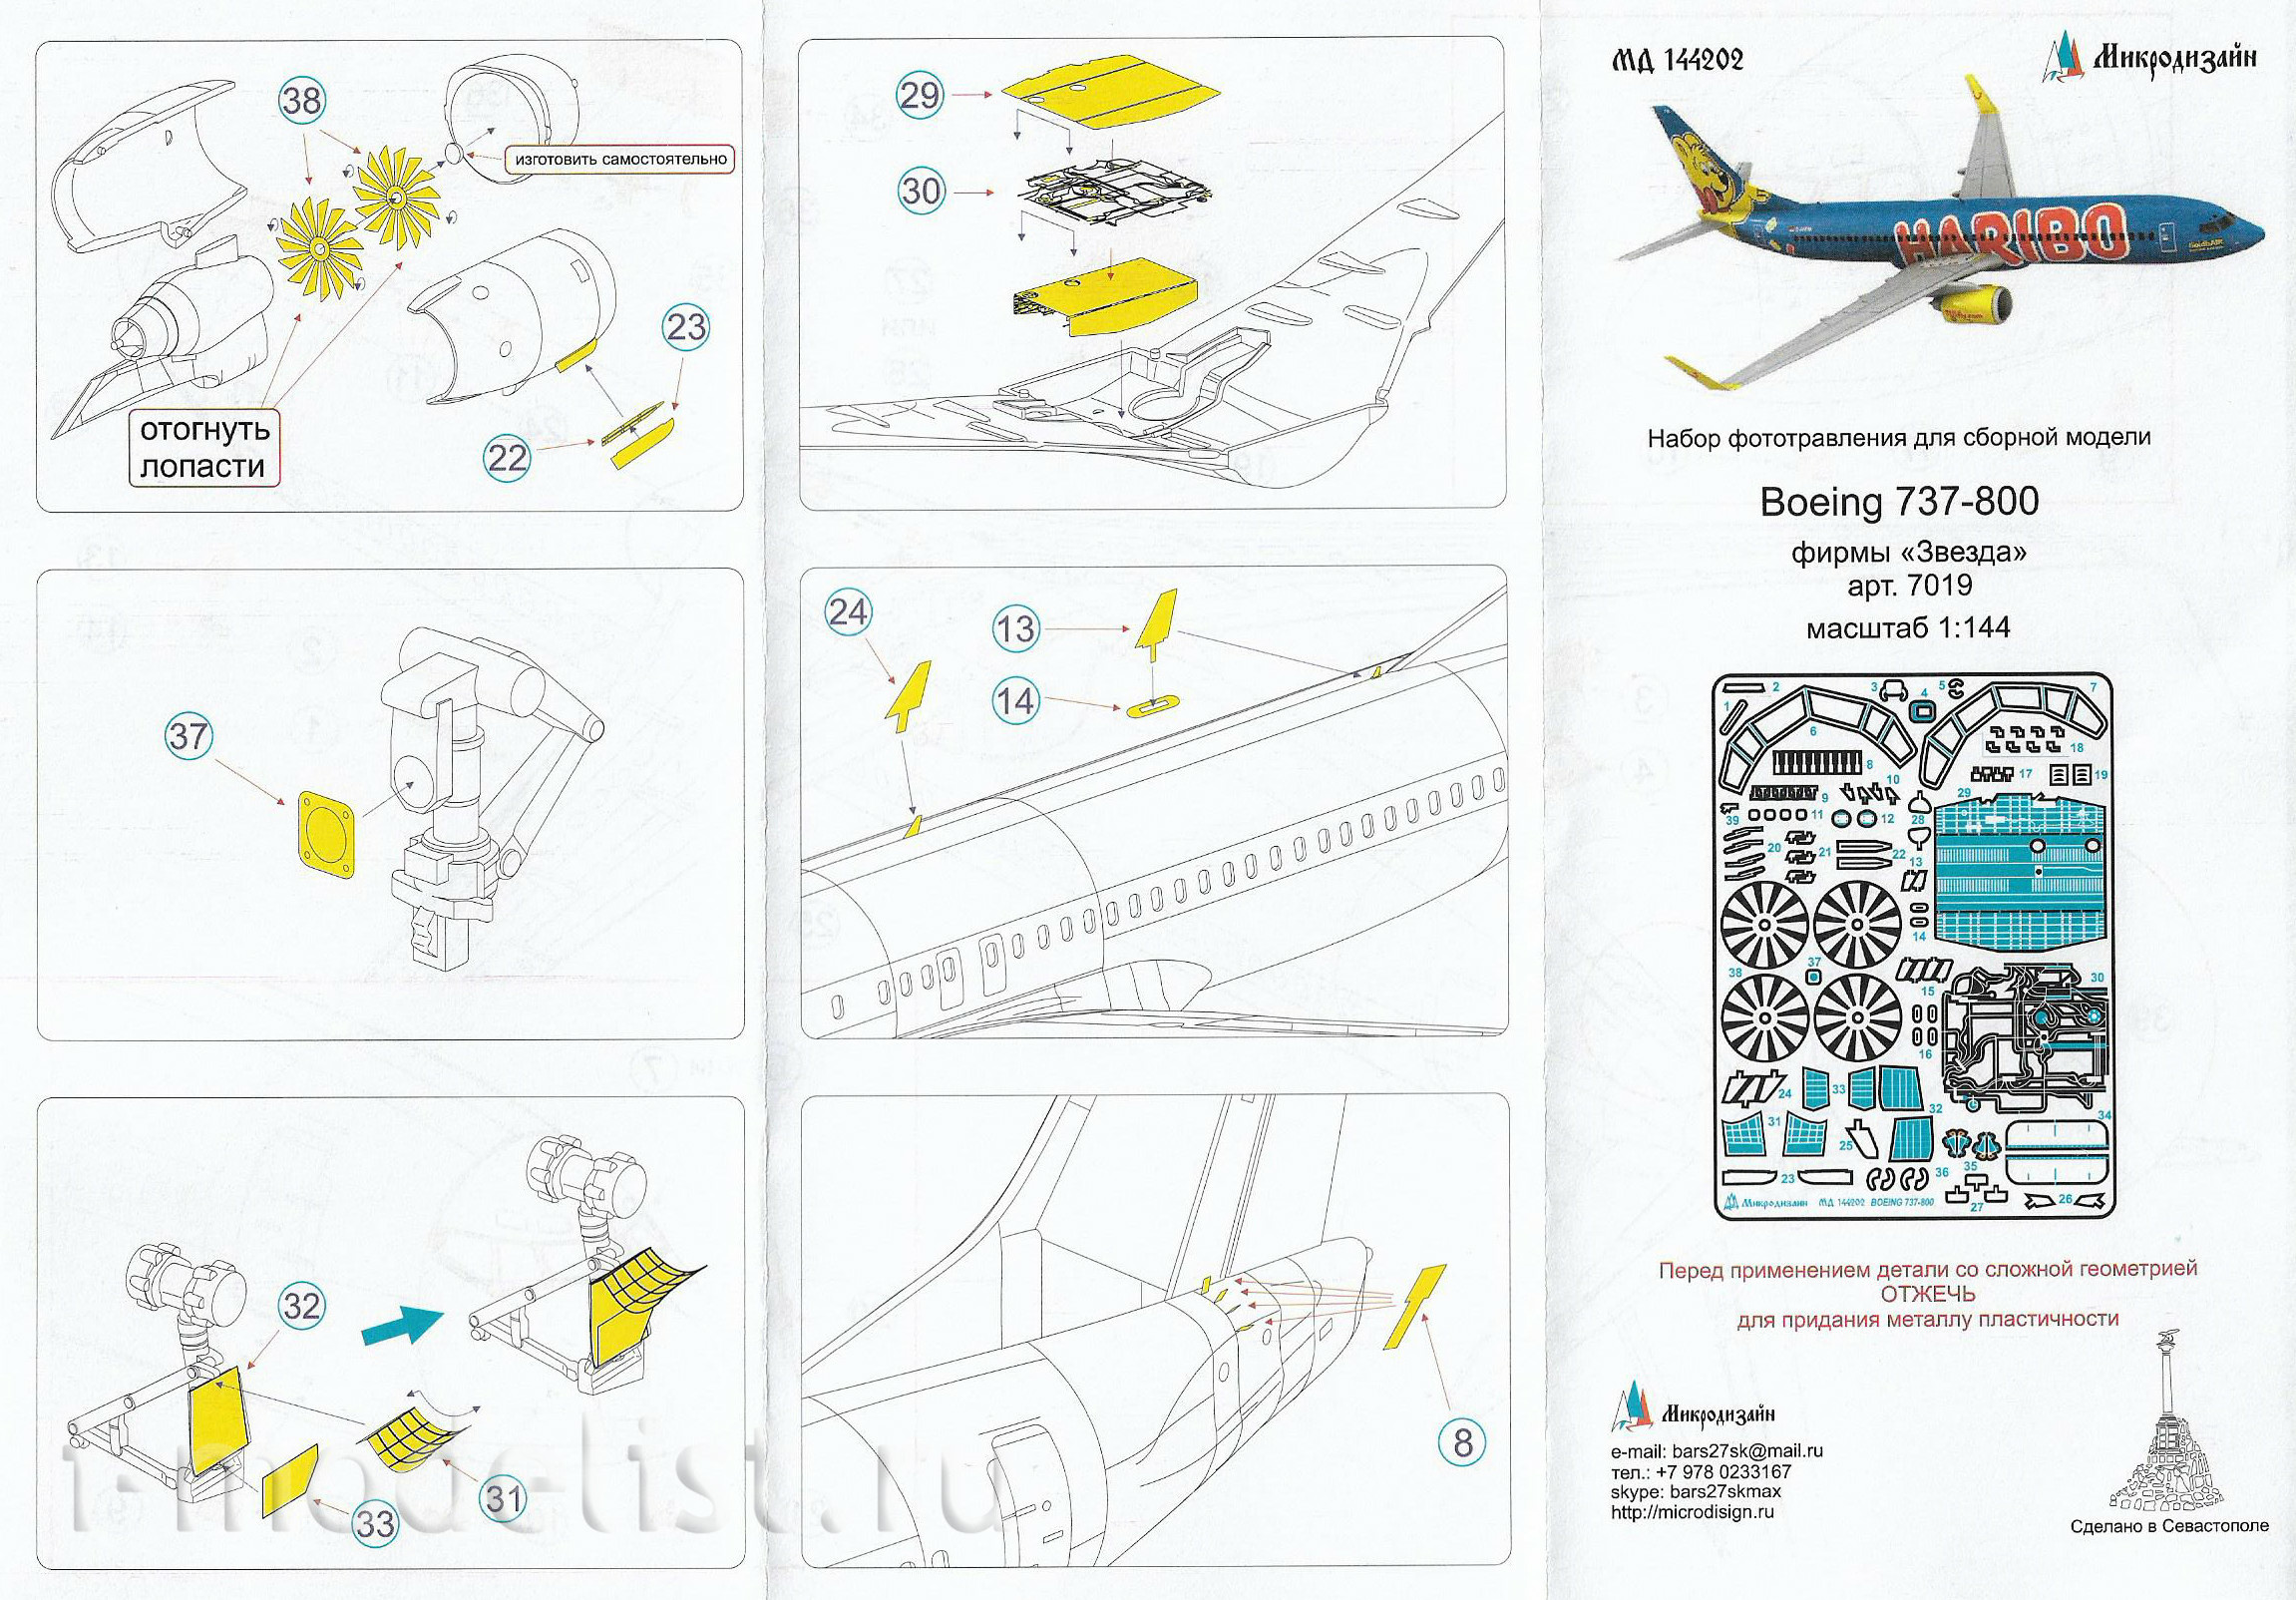 144202 Microdesign 1/144 Boing 737-800 from Zvezda